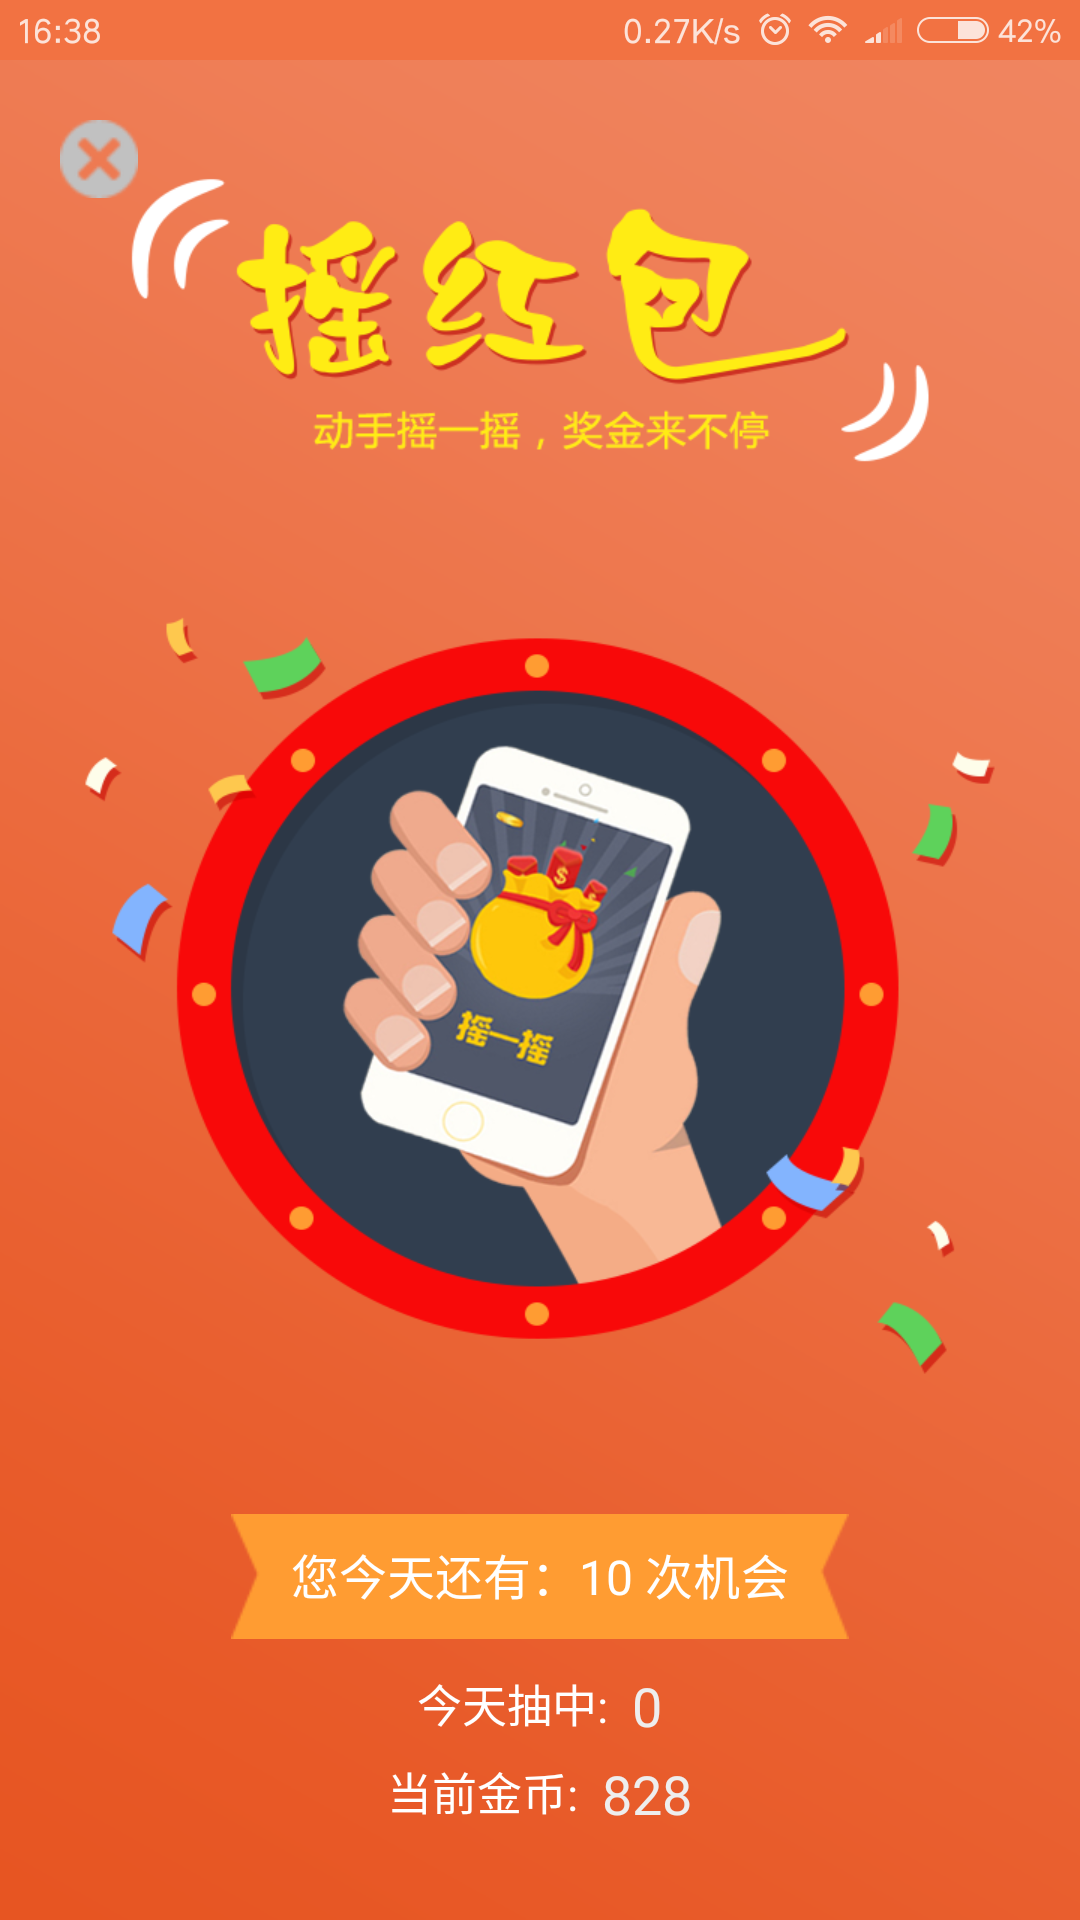 众彩生活app下载,众彩生活app官方下载